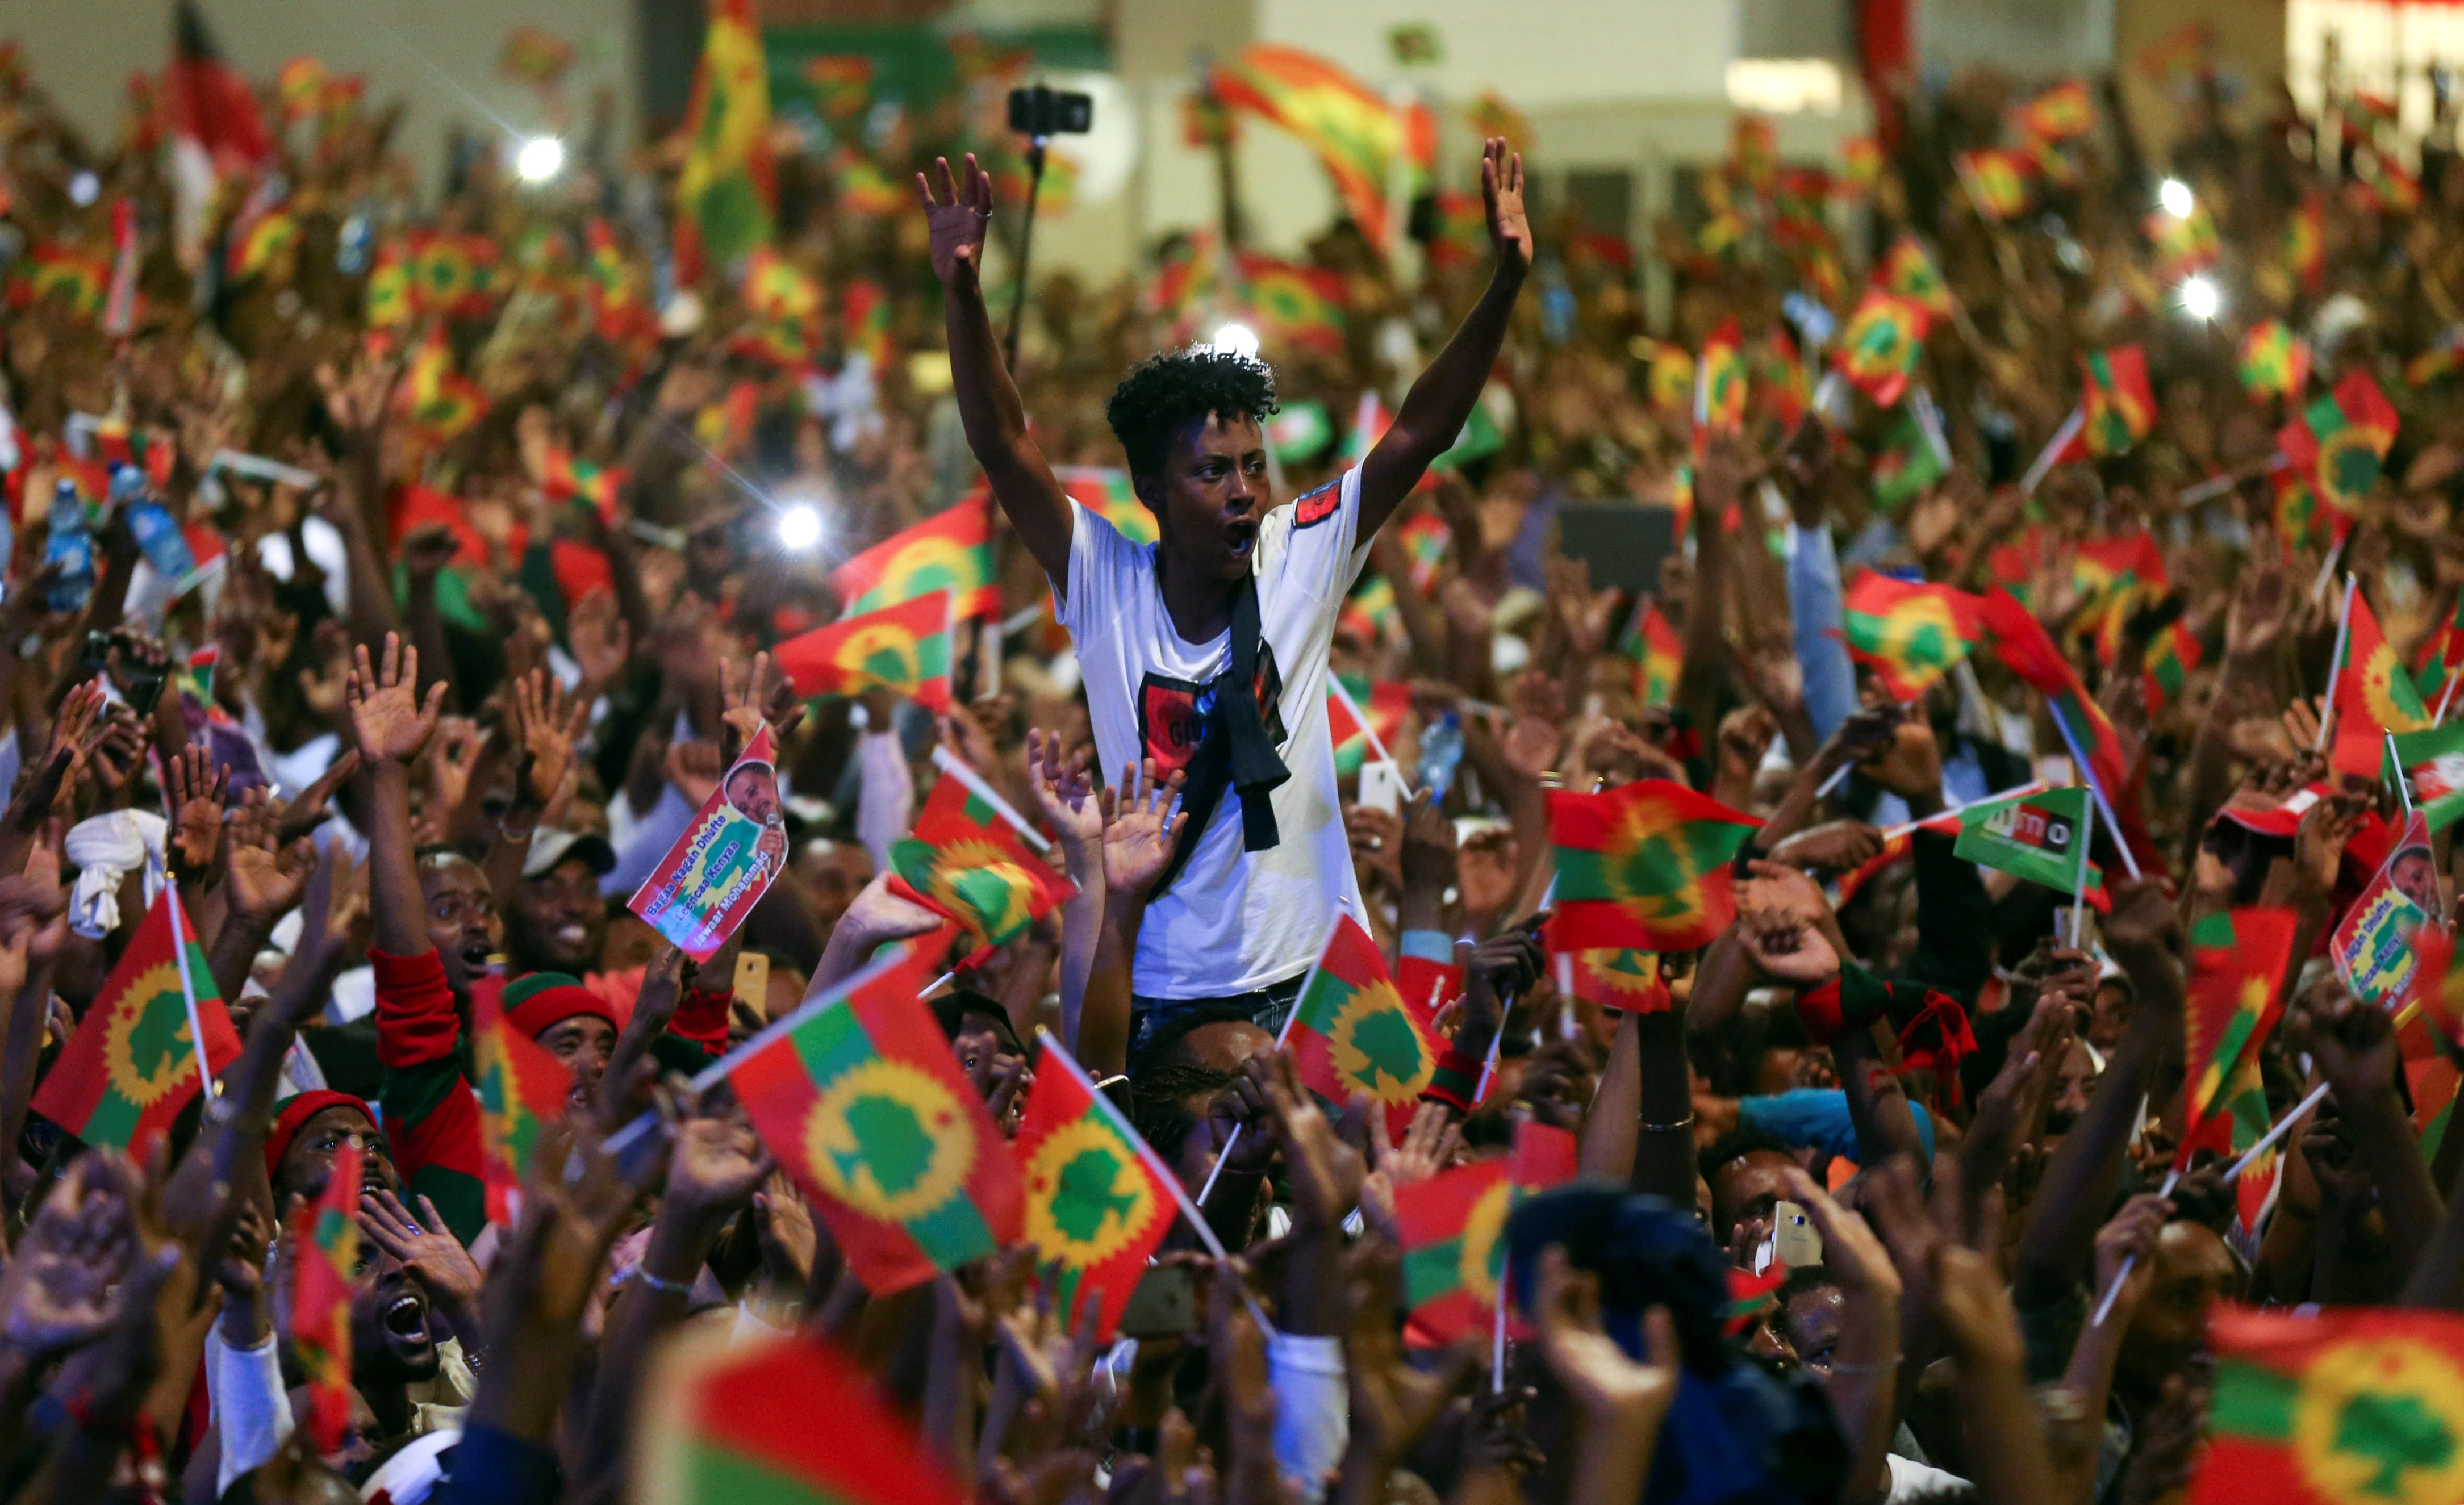 احتفالات الأورومو بمناسبة عودة جوهر محمد إلى إثيوبيا (رويترز)